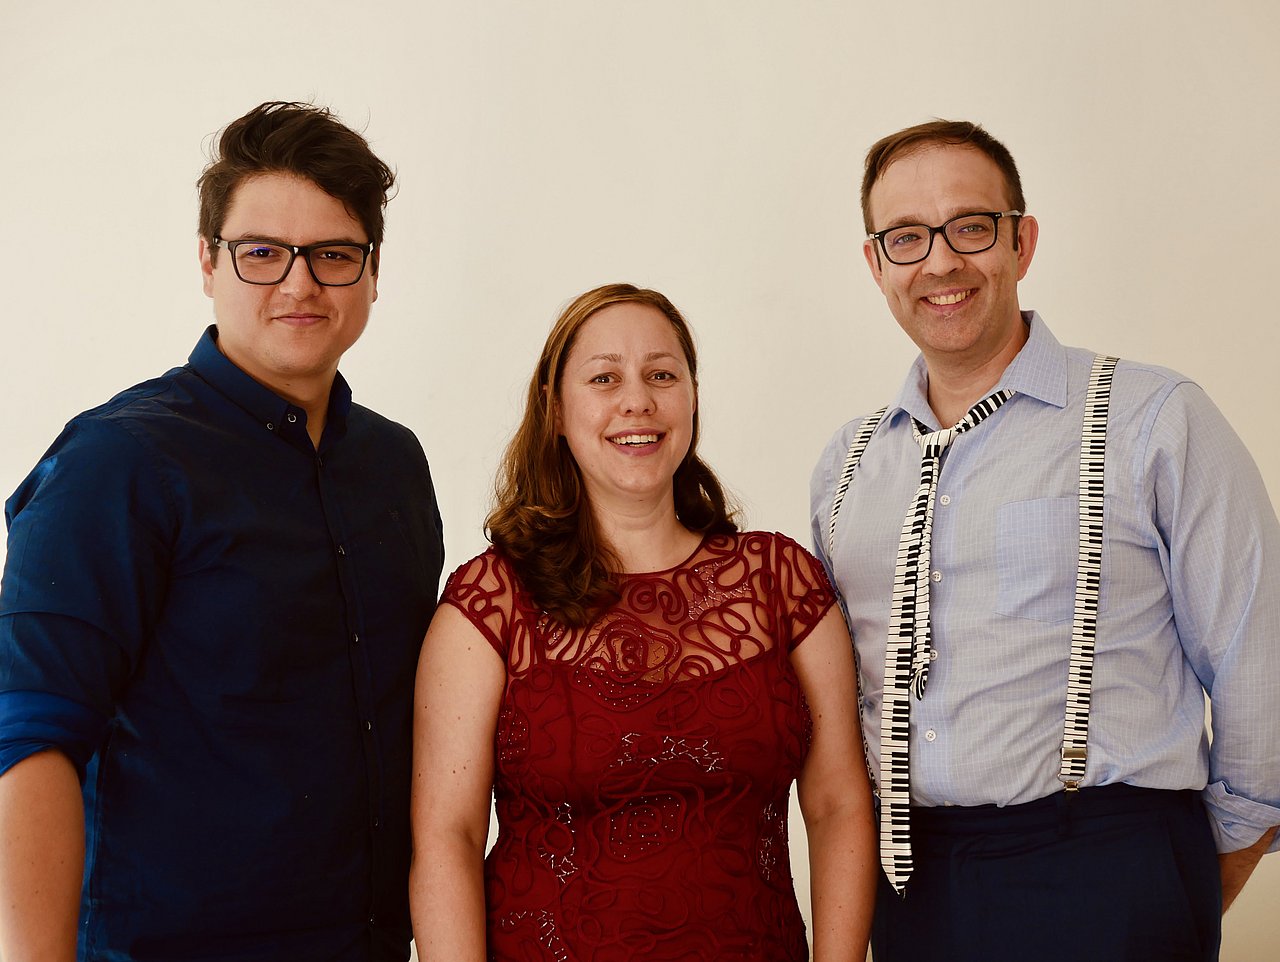 Konzert: Das renommierte Hamburger Kammermusikensemble
SaitenWind Trio